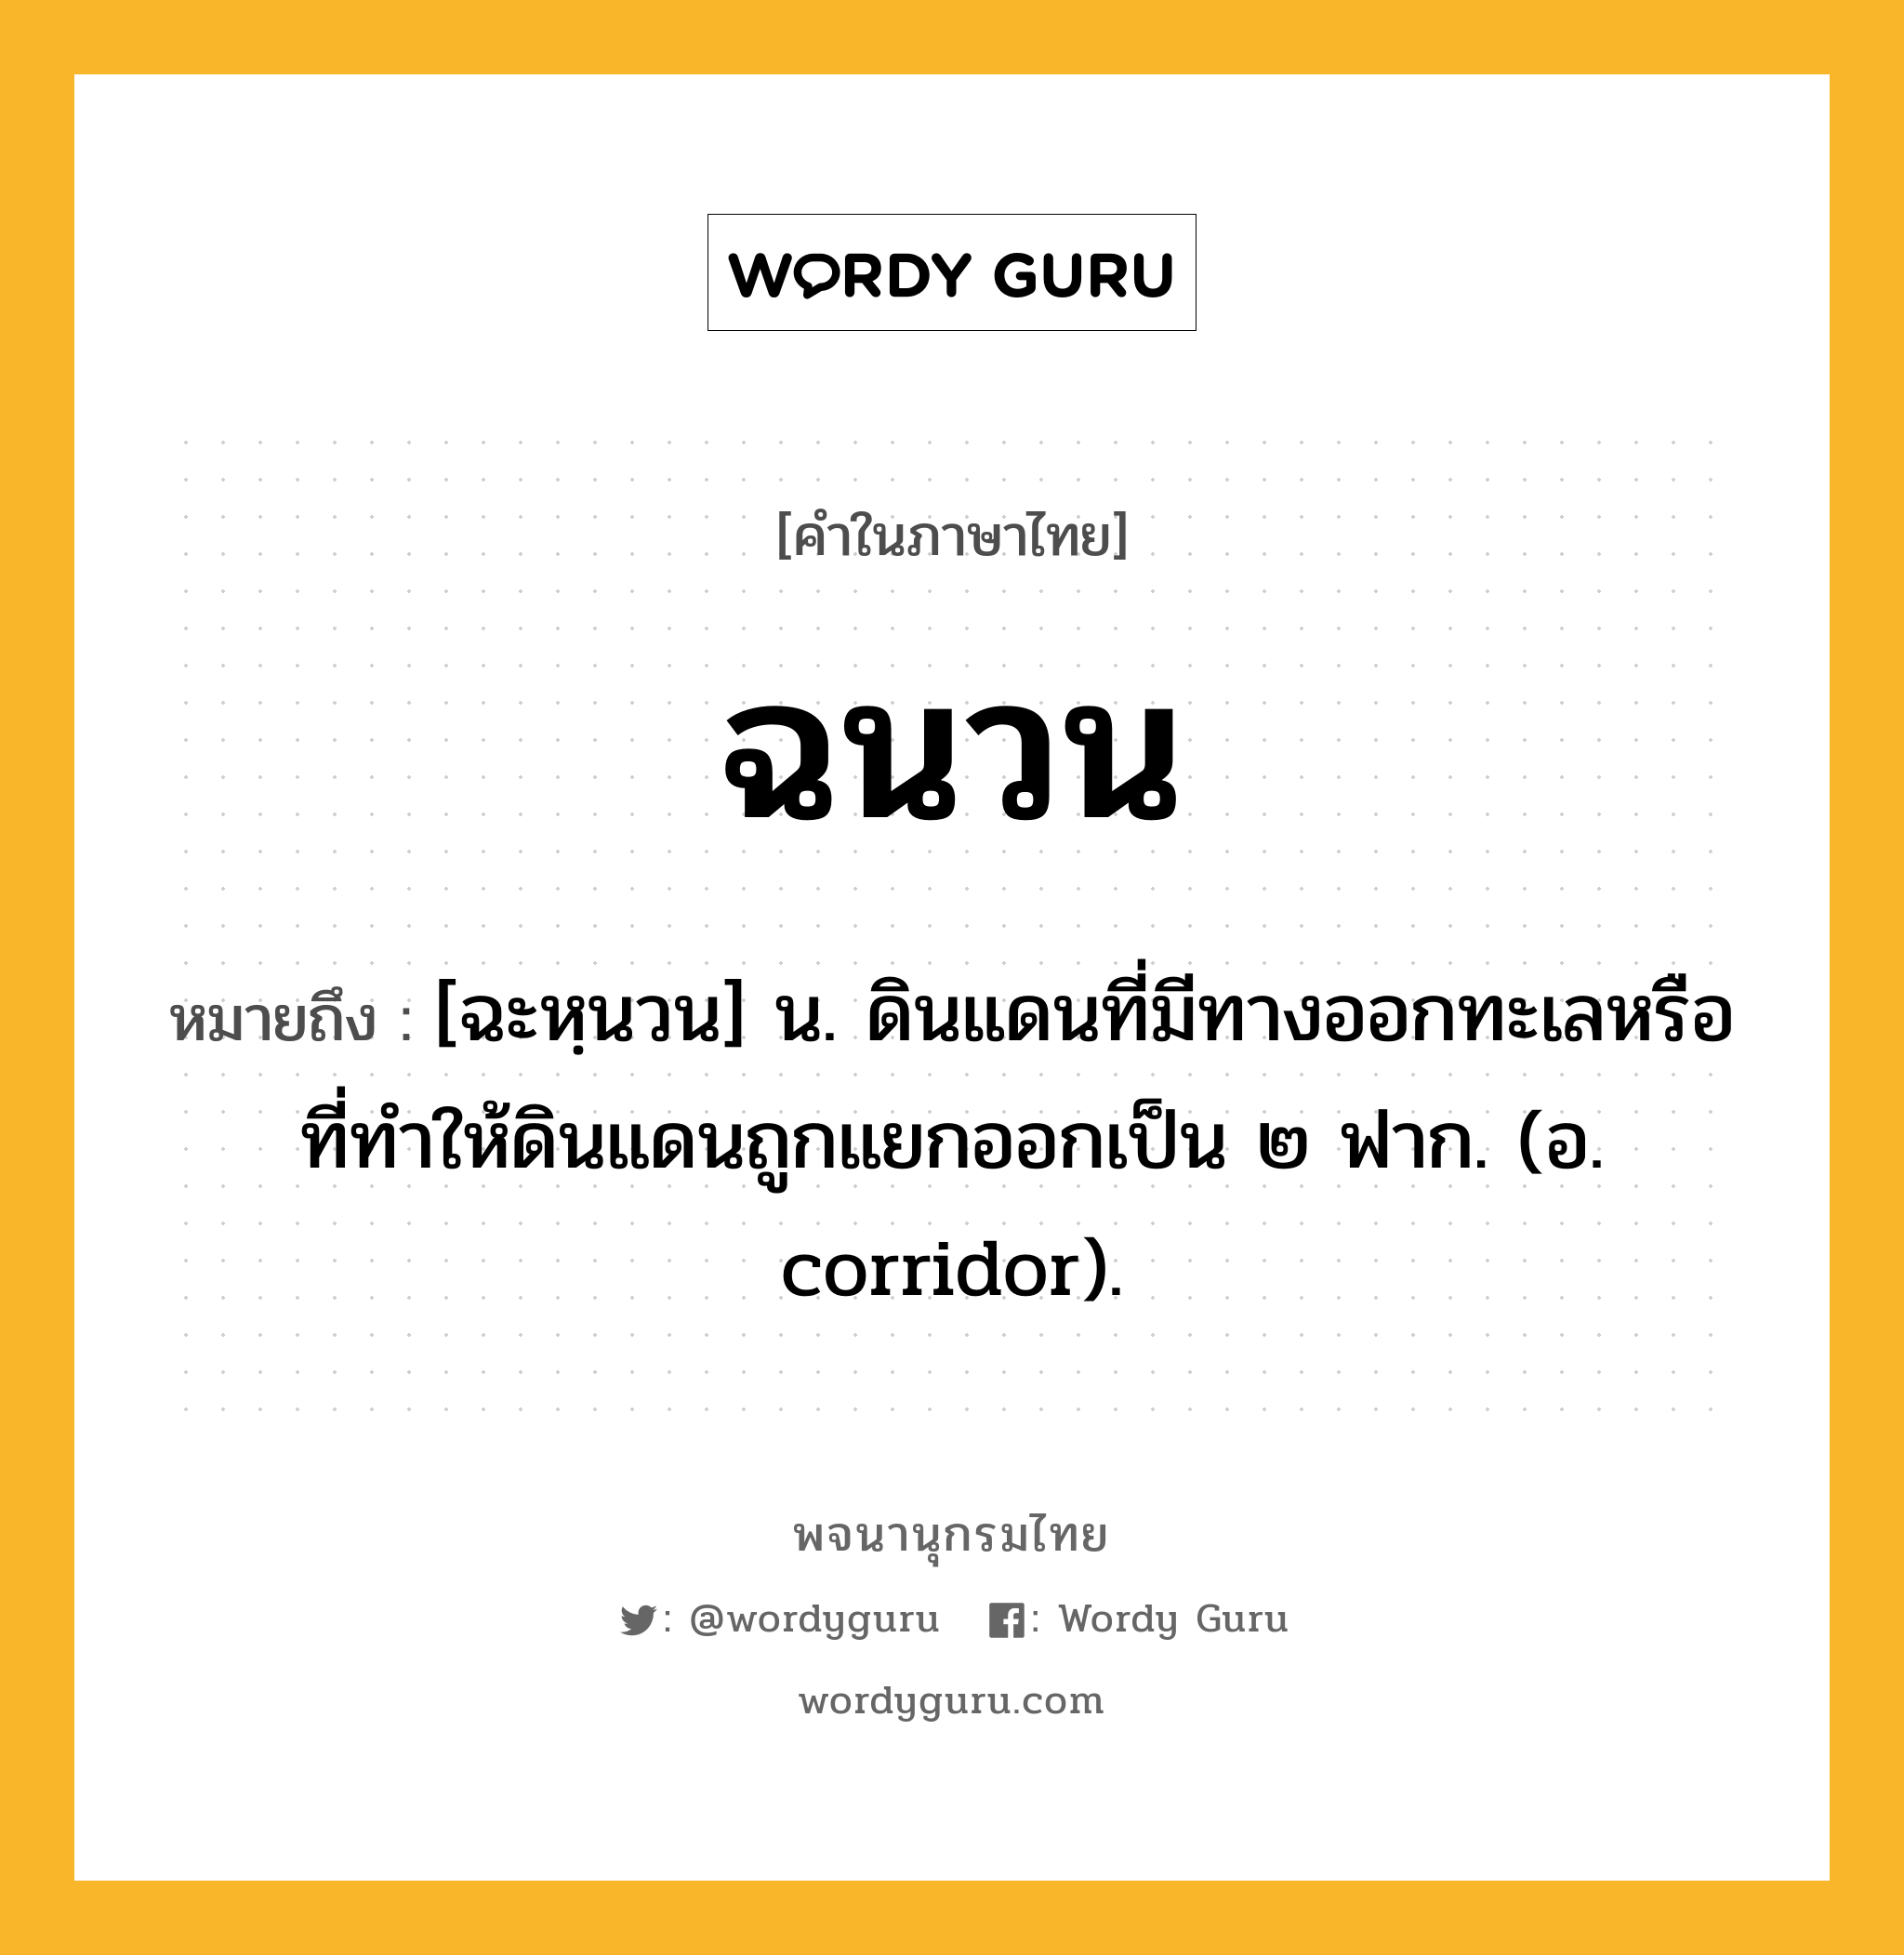 ฉนวน ความหมาย หมายถึงอะไร?, คำในภาษาไทย ฉนวน หมายถึง [ฉะหฺนวน] น. ดินแดนที่มีทางออกทะเลหรือที่ทําให้ดินแดนถูกแยกออกเป็น ๒ ฟาก. (อ. corridor).